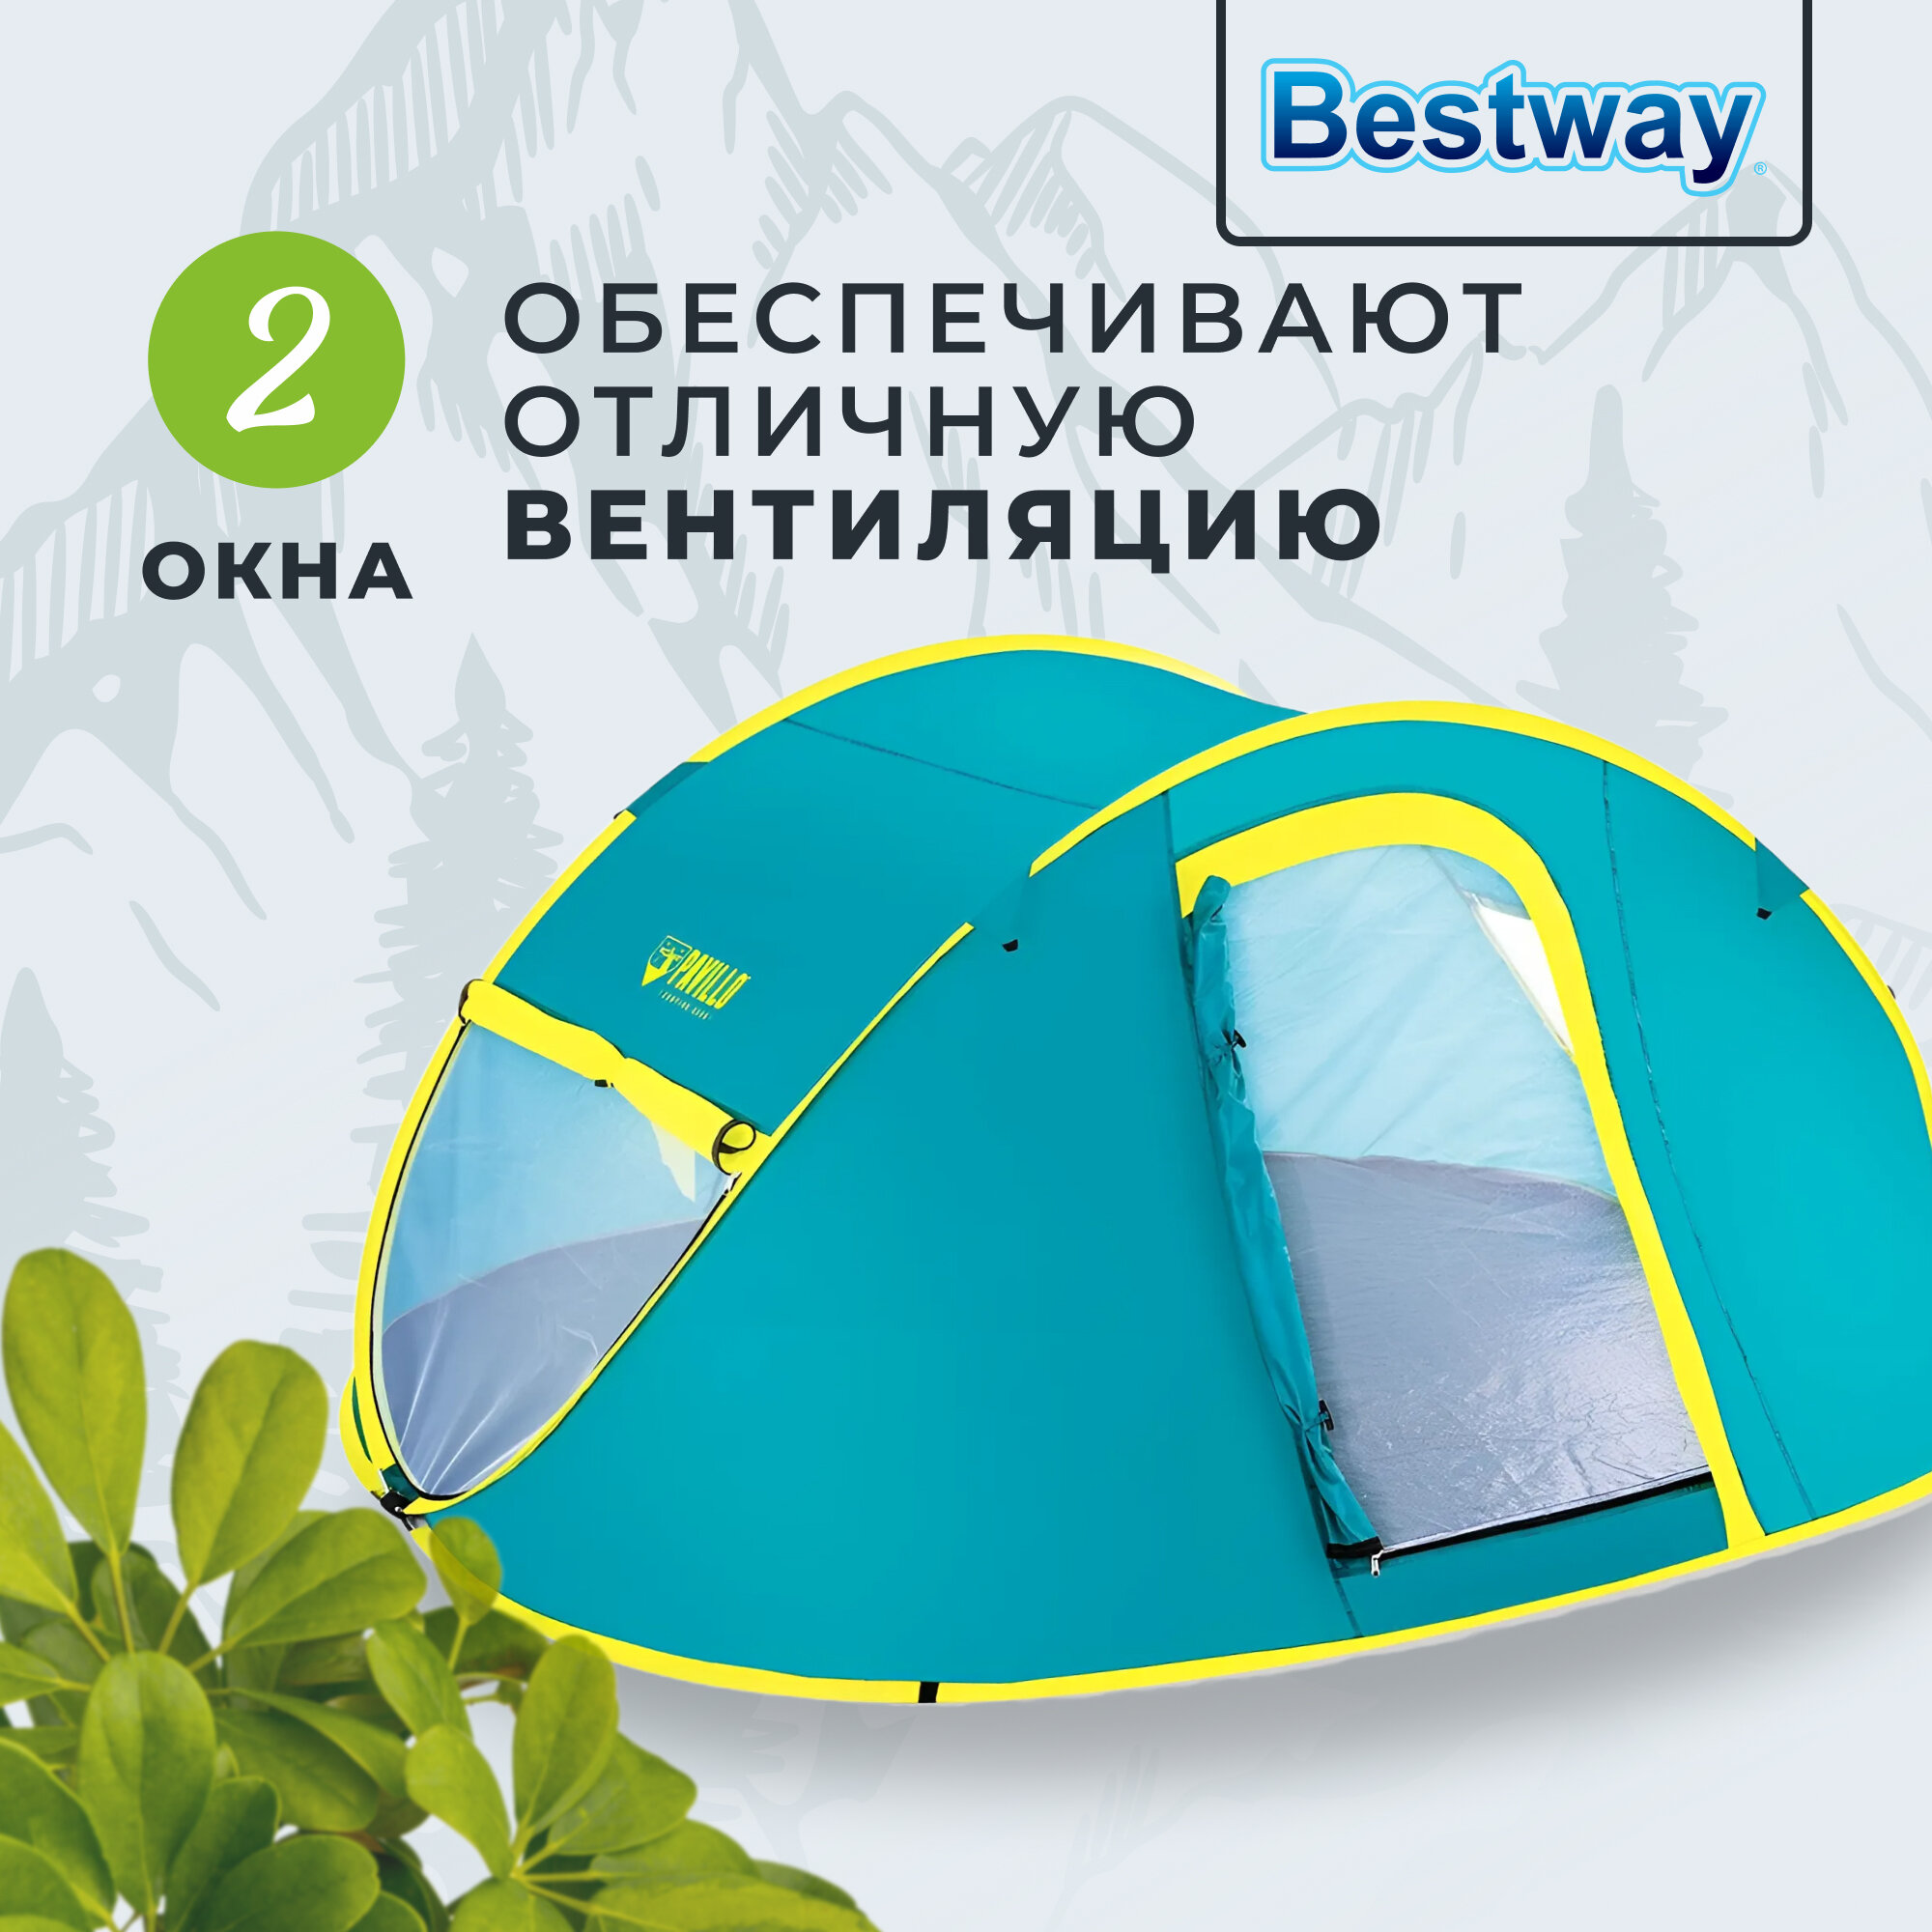 Палатка 4-х местная с москитной сеткой и 2-мя окнами, вес 2,3кг, Bestway